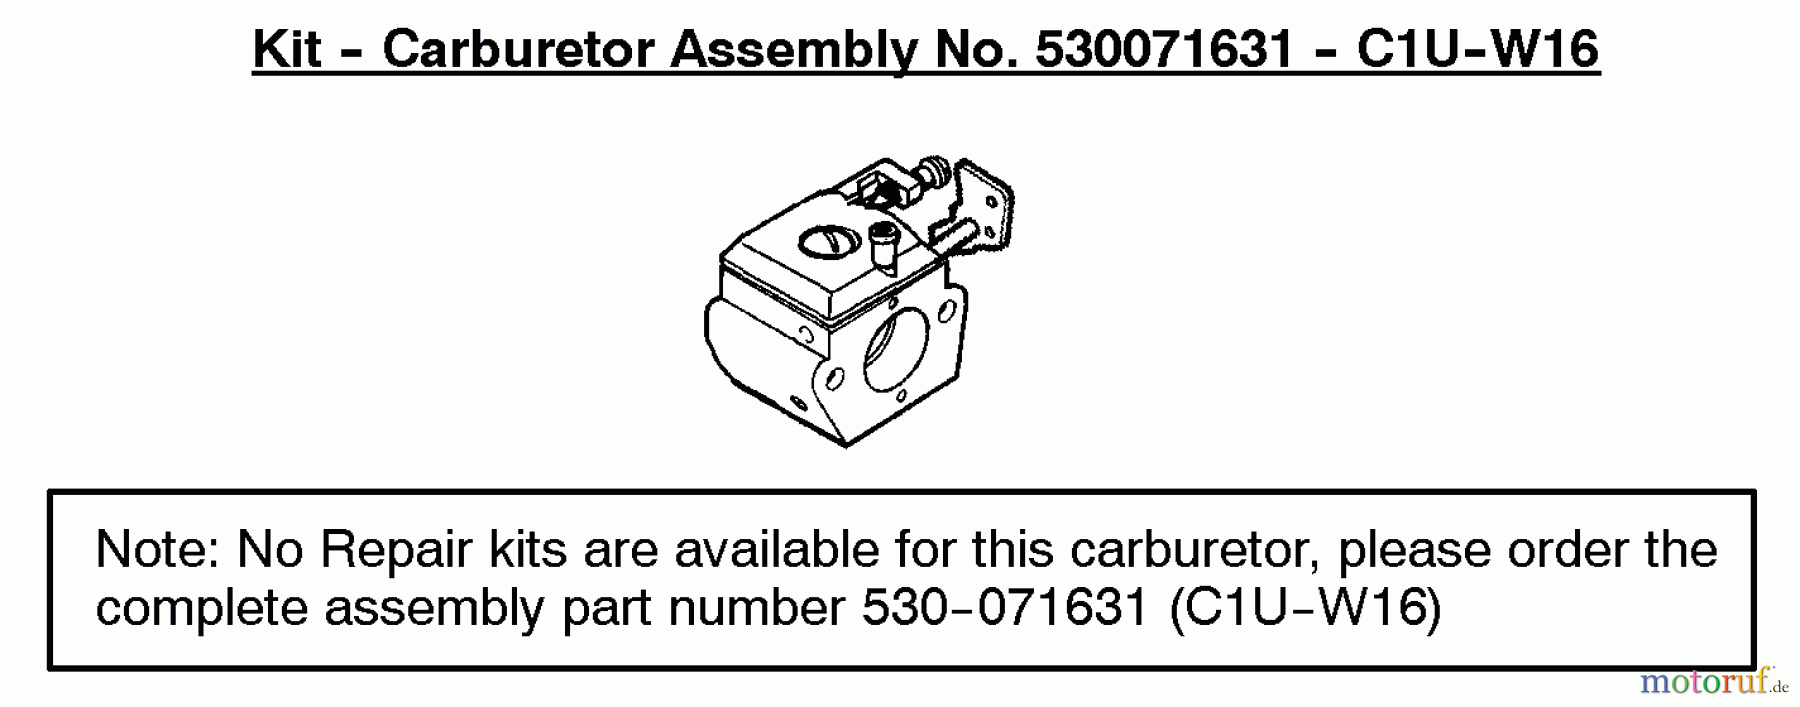  Poulan / Weed Eater Motorsensen, Trimmer BC2500LE (Type 4) - Weed Eater String Trimmer Carburetor Assembly (C1U-W16) 530071631